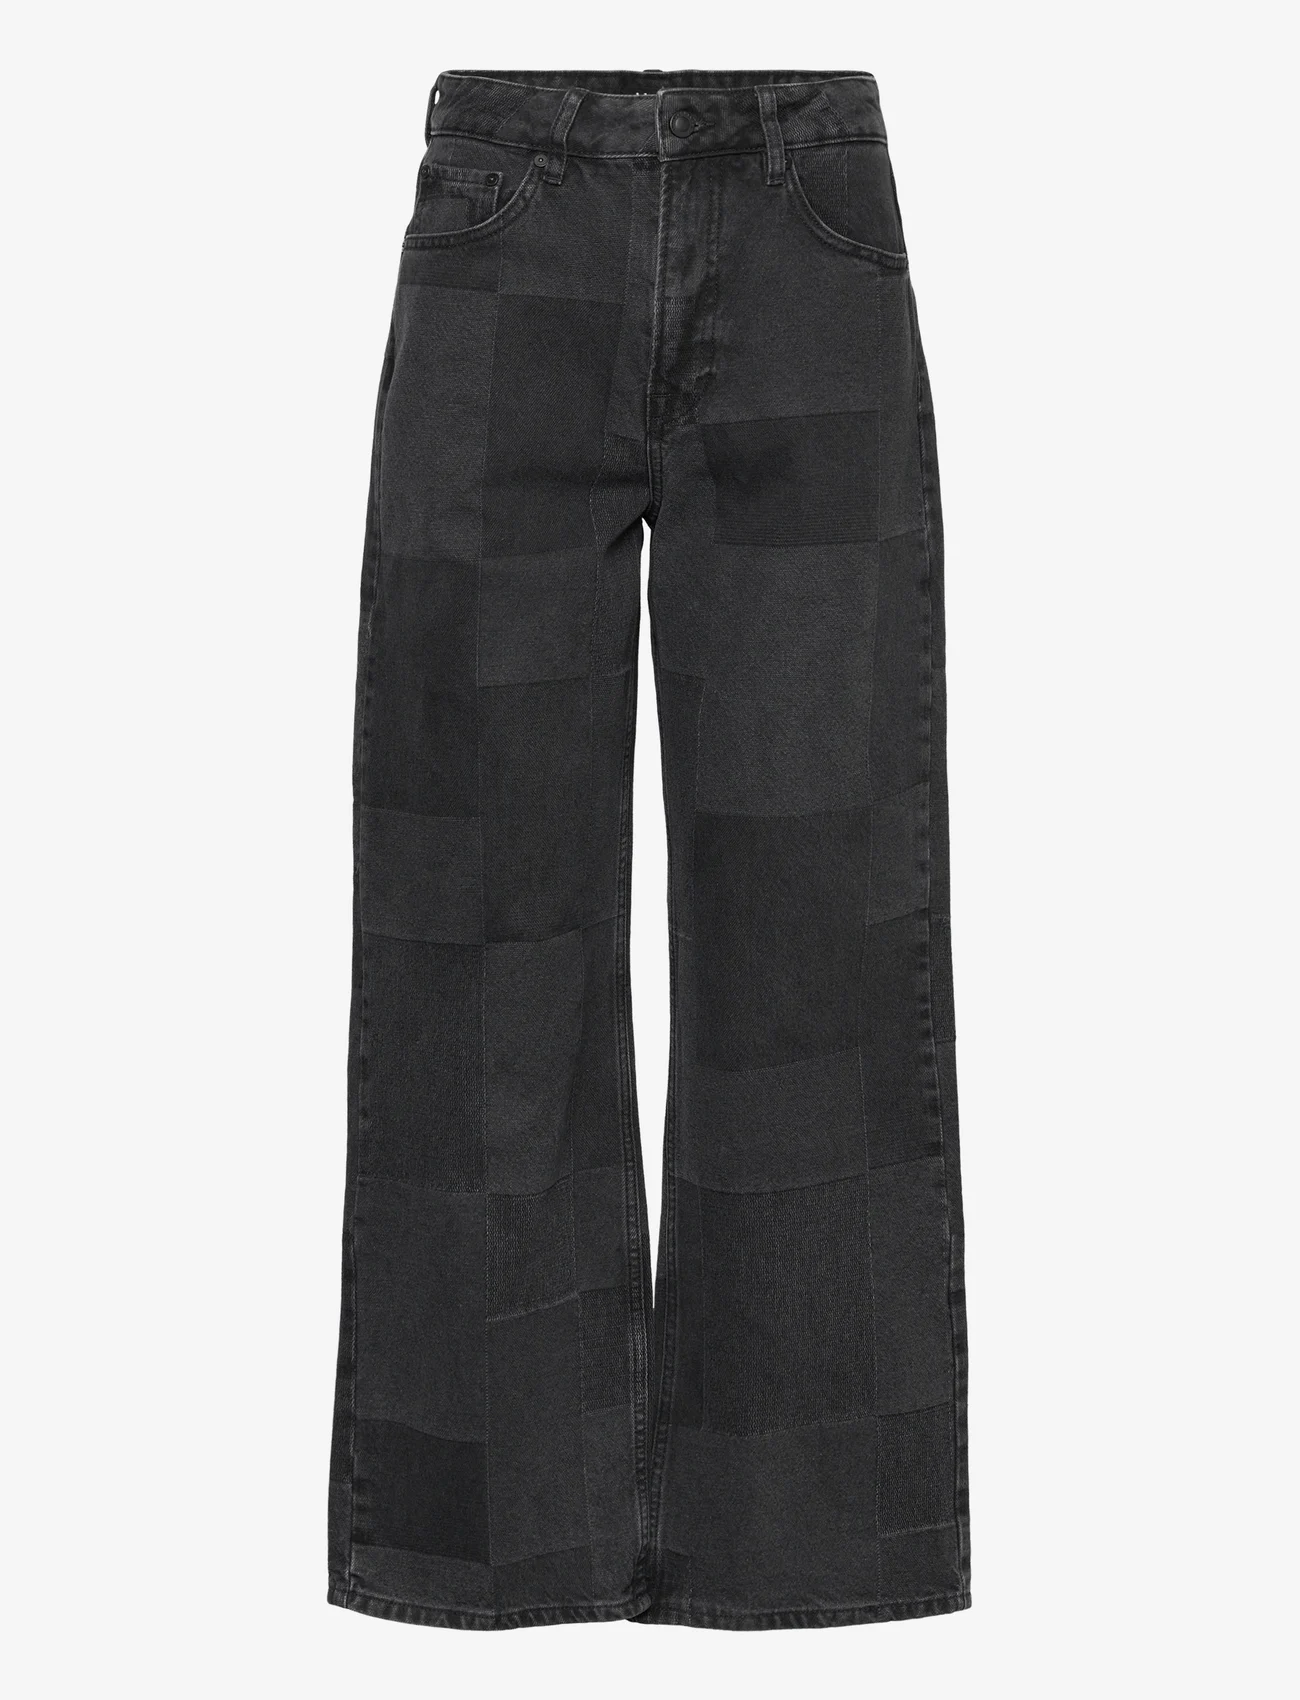 IVY Copenhagen - IVY-Brooke Patchwork Jeans Wash Bla - brede jeans - black - 0